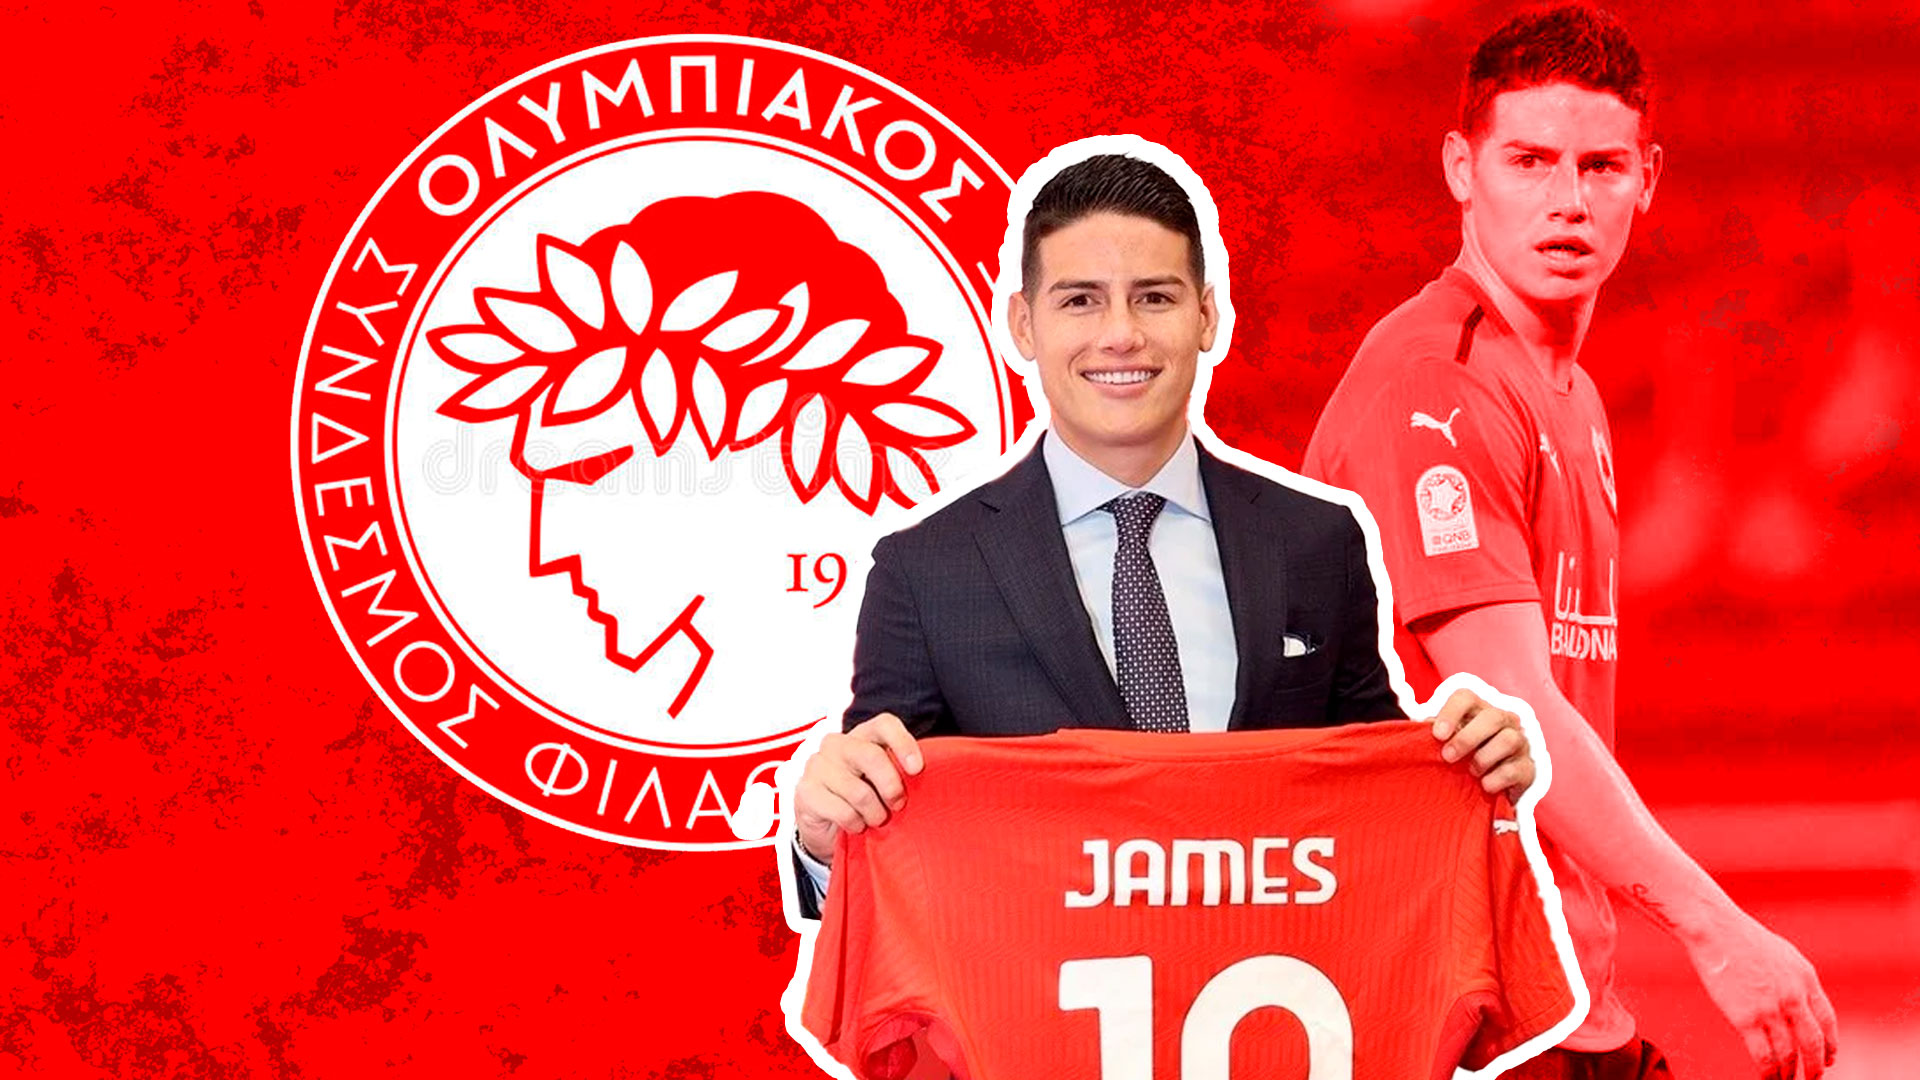 Oficial: James Rodríguez nuevo jugador de Olympiacos FC - Infobae